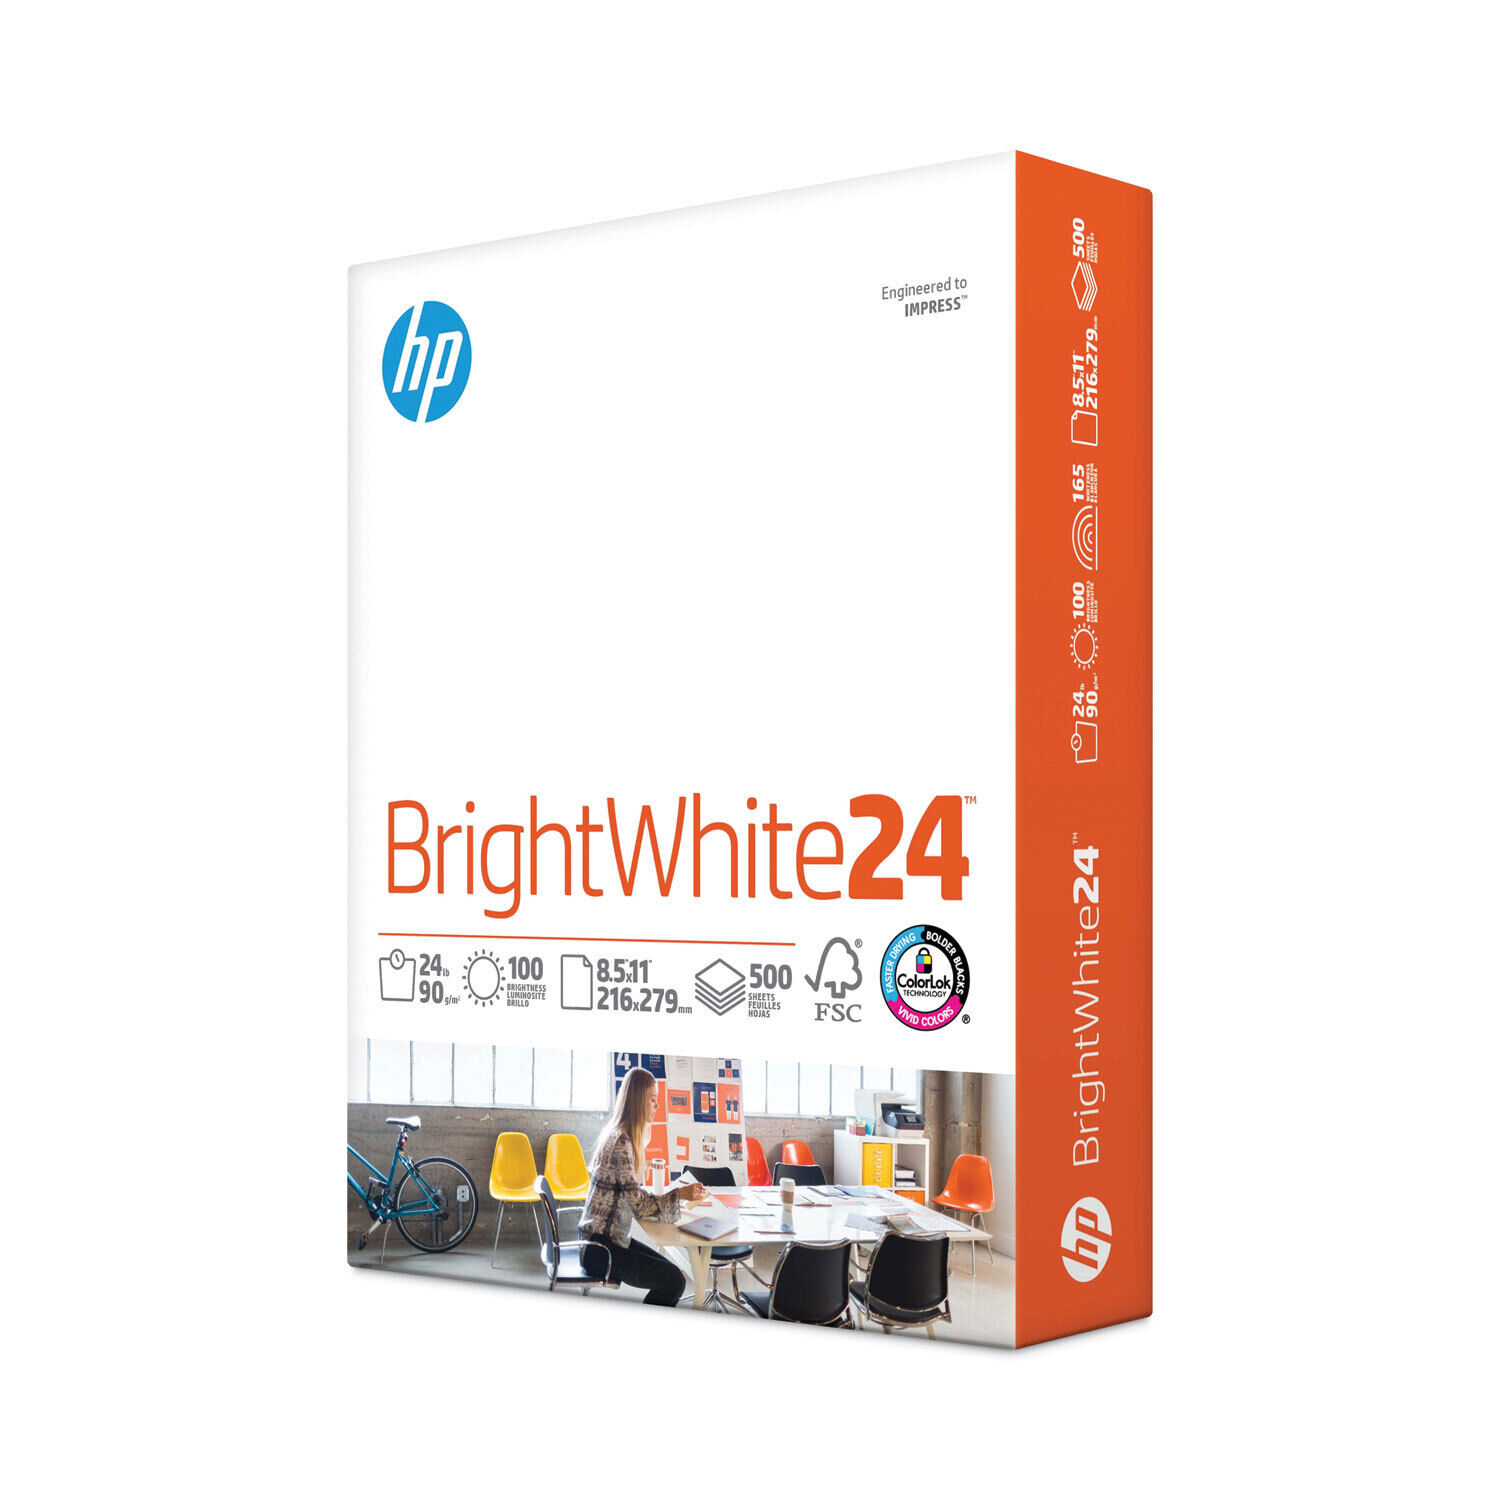 HP 20300-0 Printer Paper Bright White 24lb 8.5